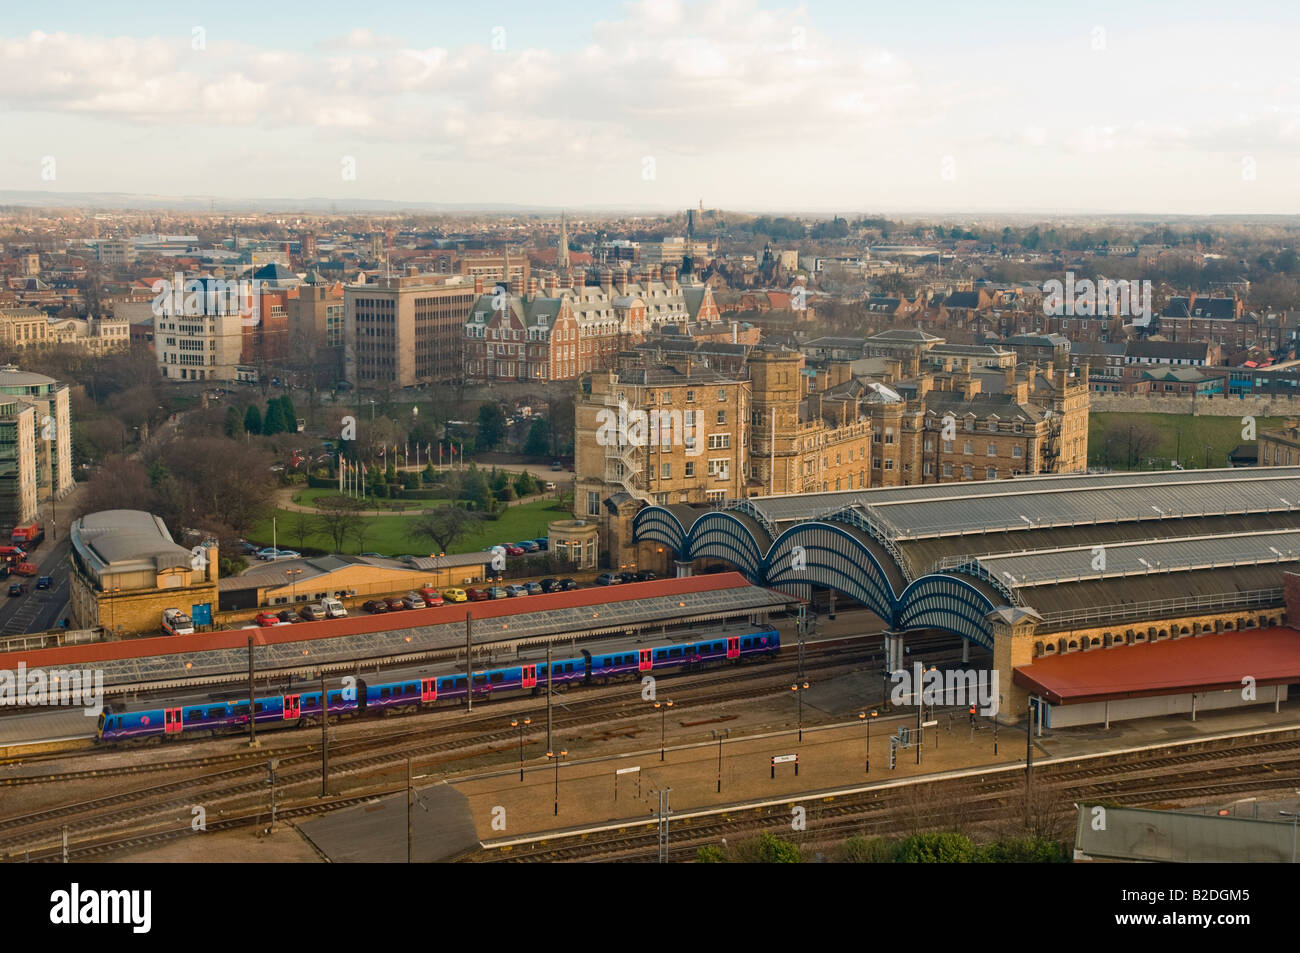 Erhöhte Sicht auf die Stadt York mit den Plattformen der York Station mit ihren geschwungenen Dächern im Vordergrund. Nach York. UK Stockfoto